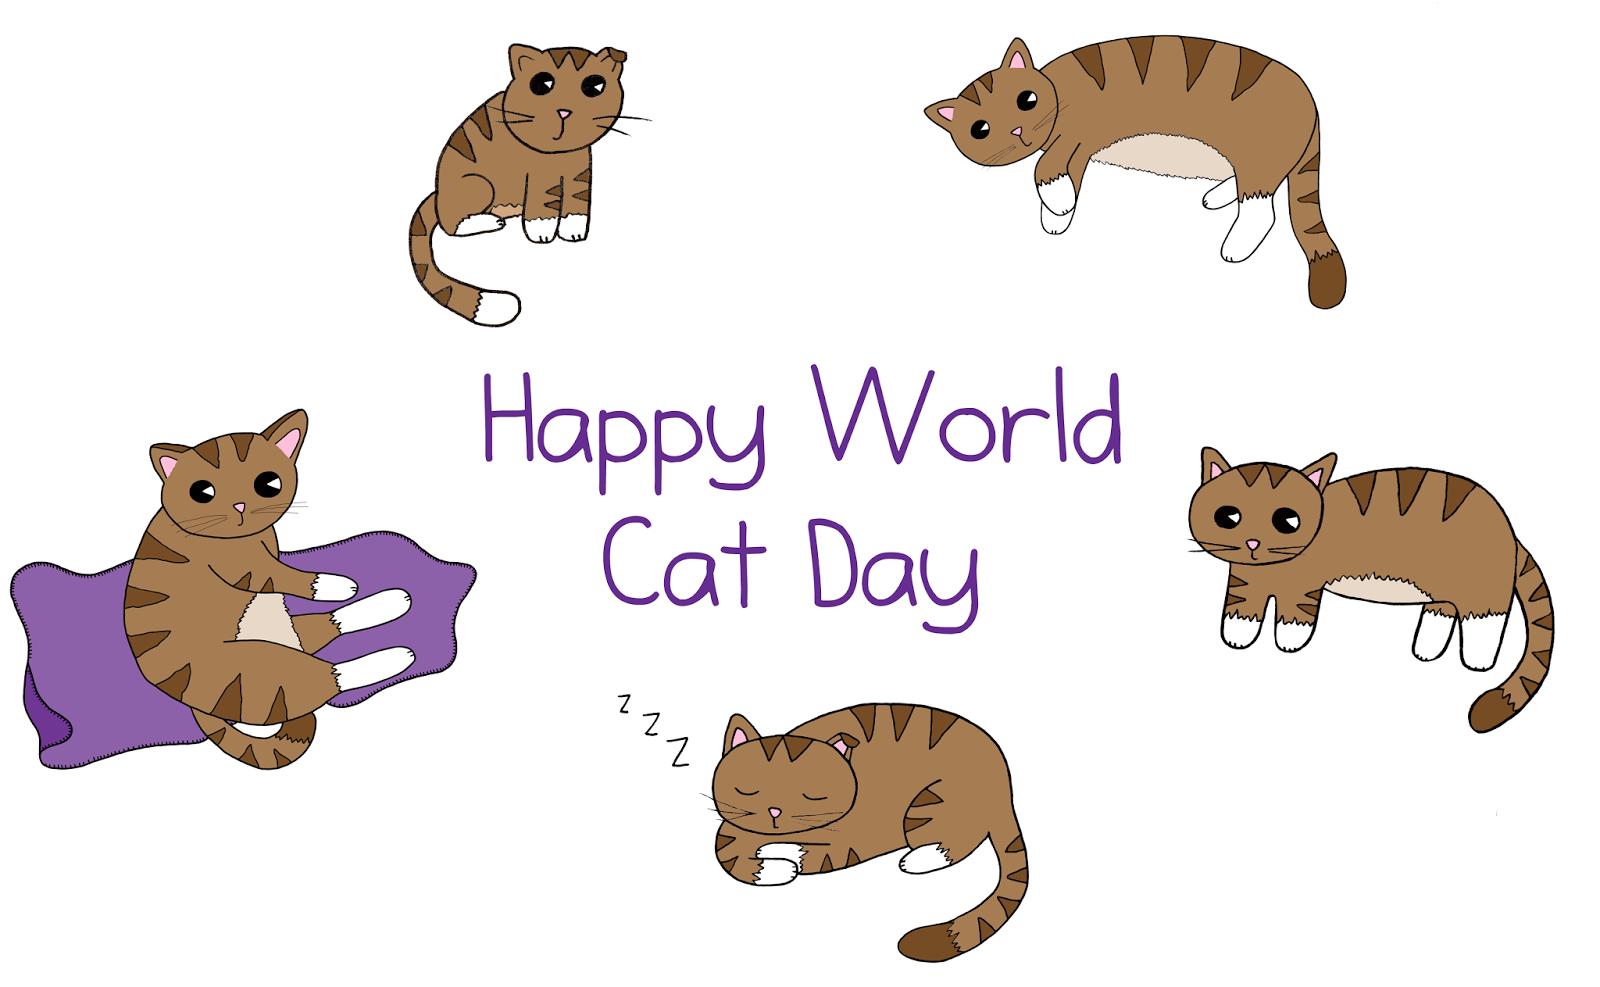 จงทำให้ข้ามีความสุข 15 วิธีเอาใจนายหัวแมว เนื่องในวันแมวโลก 8 สิงหาคม!!